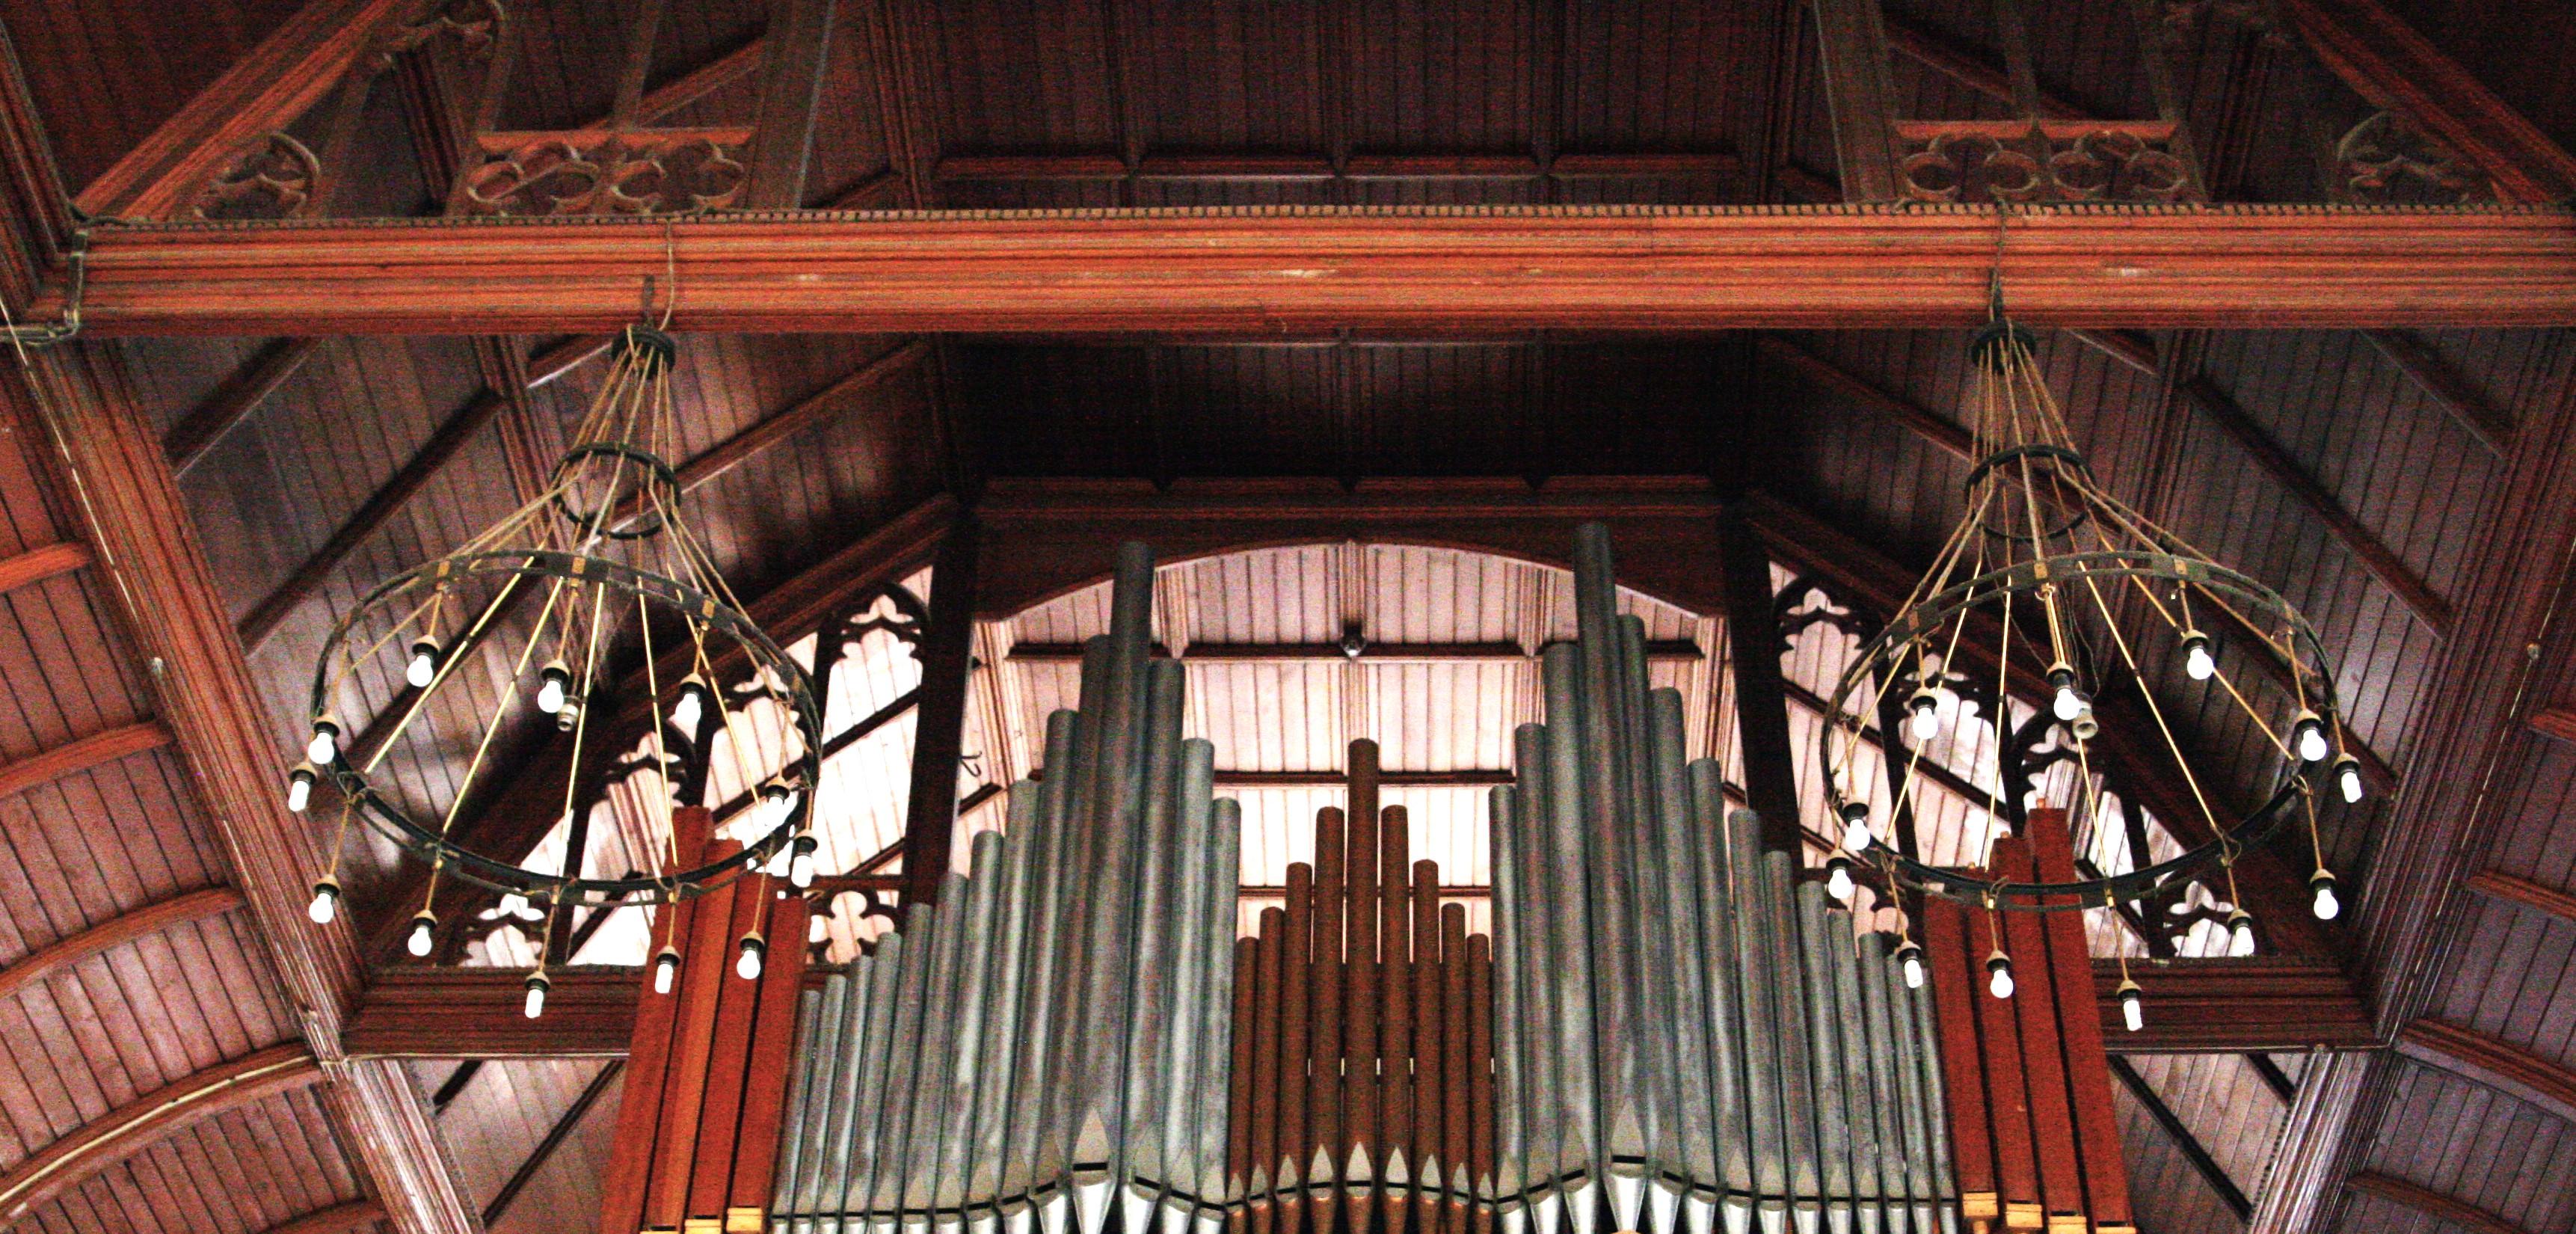 Концерт «Старинный орган Англиканского собора. Немецкие гении» со скидкой 25%